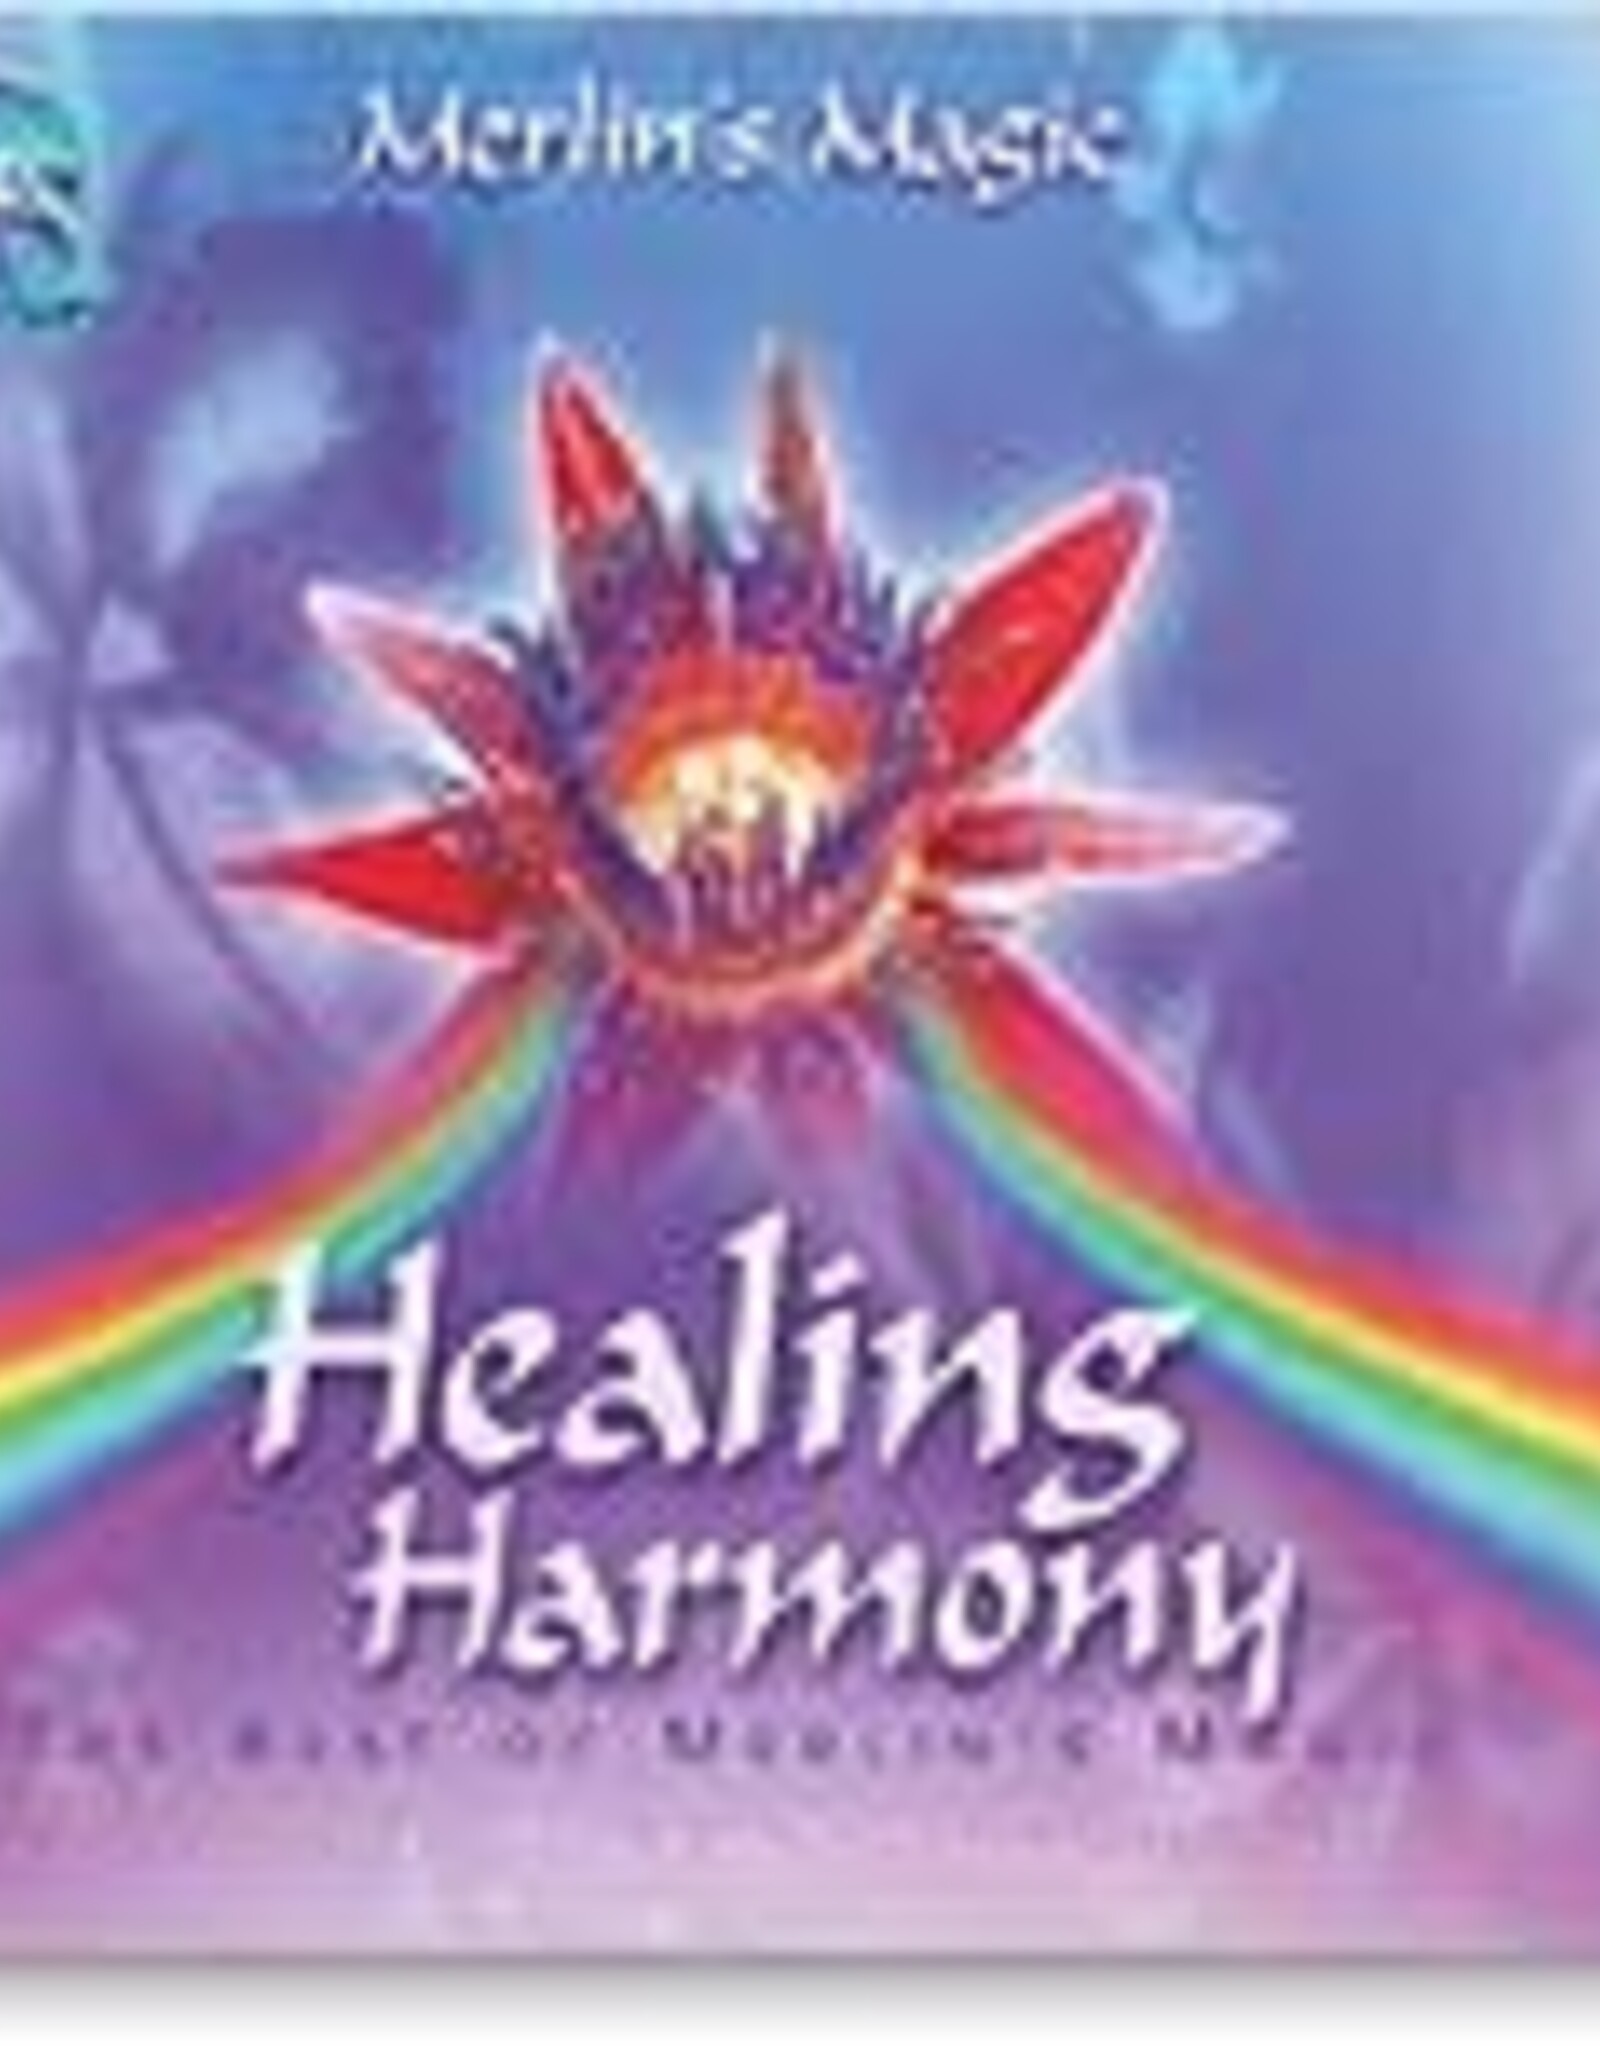 Healing Harmony CD